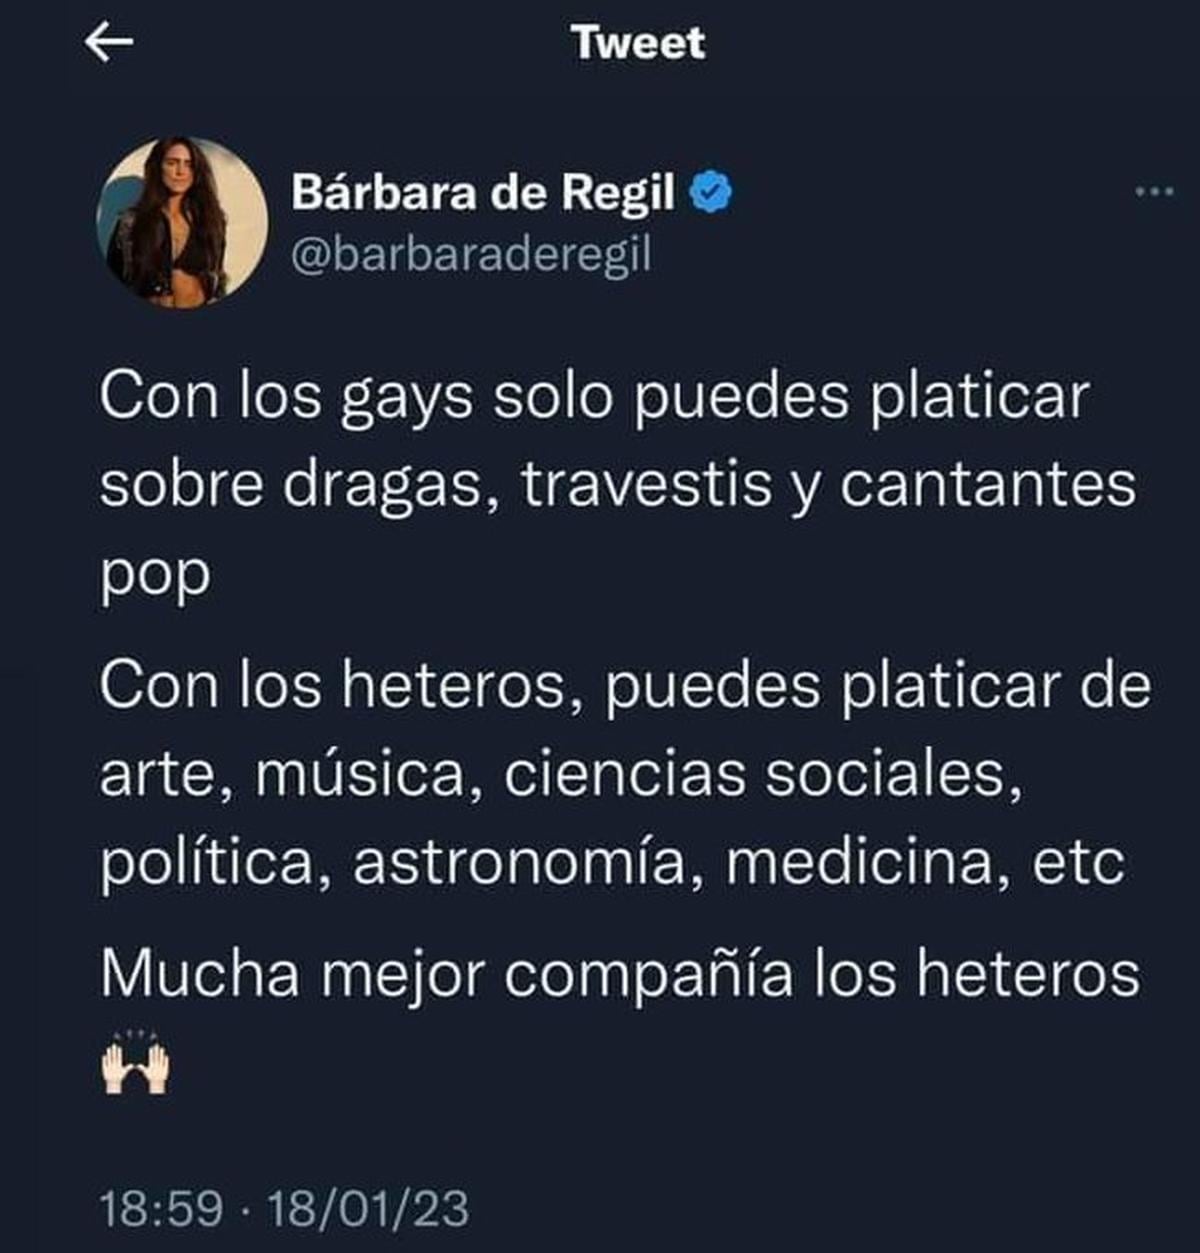  | Usuarios de redes sociales compartieron el tuit de Bárbara de Regil.